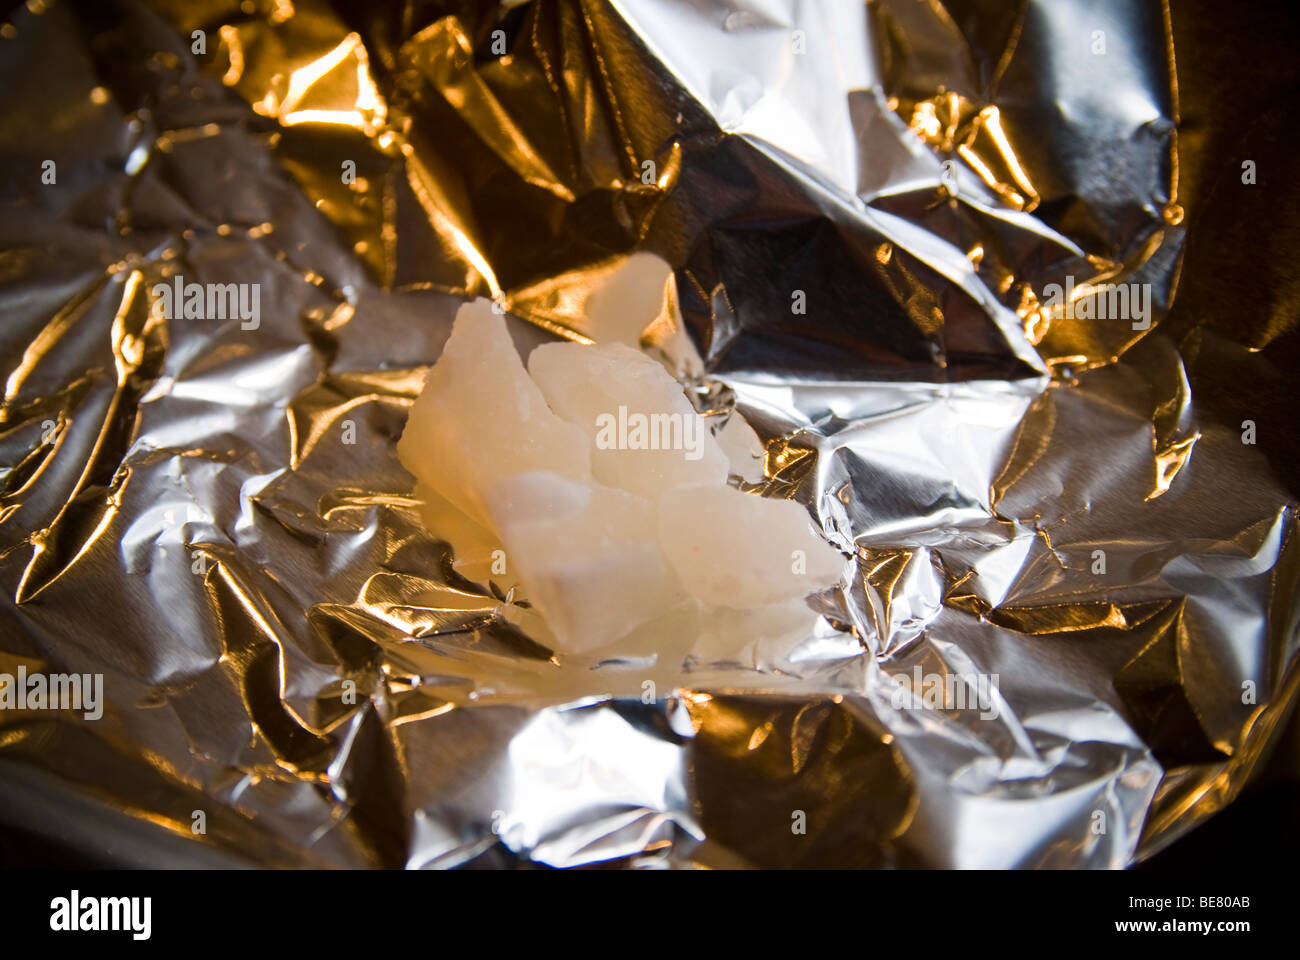 La 'cocaína de la pradera': así es la droga legal que arrasa en el  Oktoberfest, F5